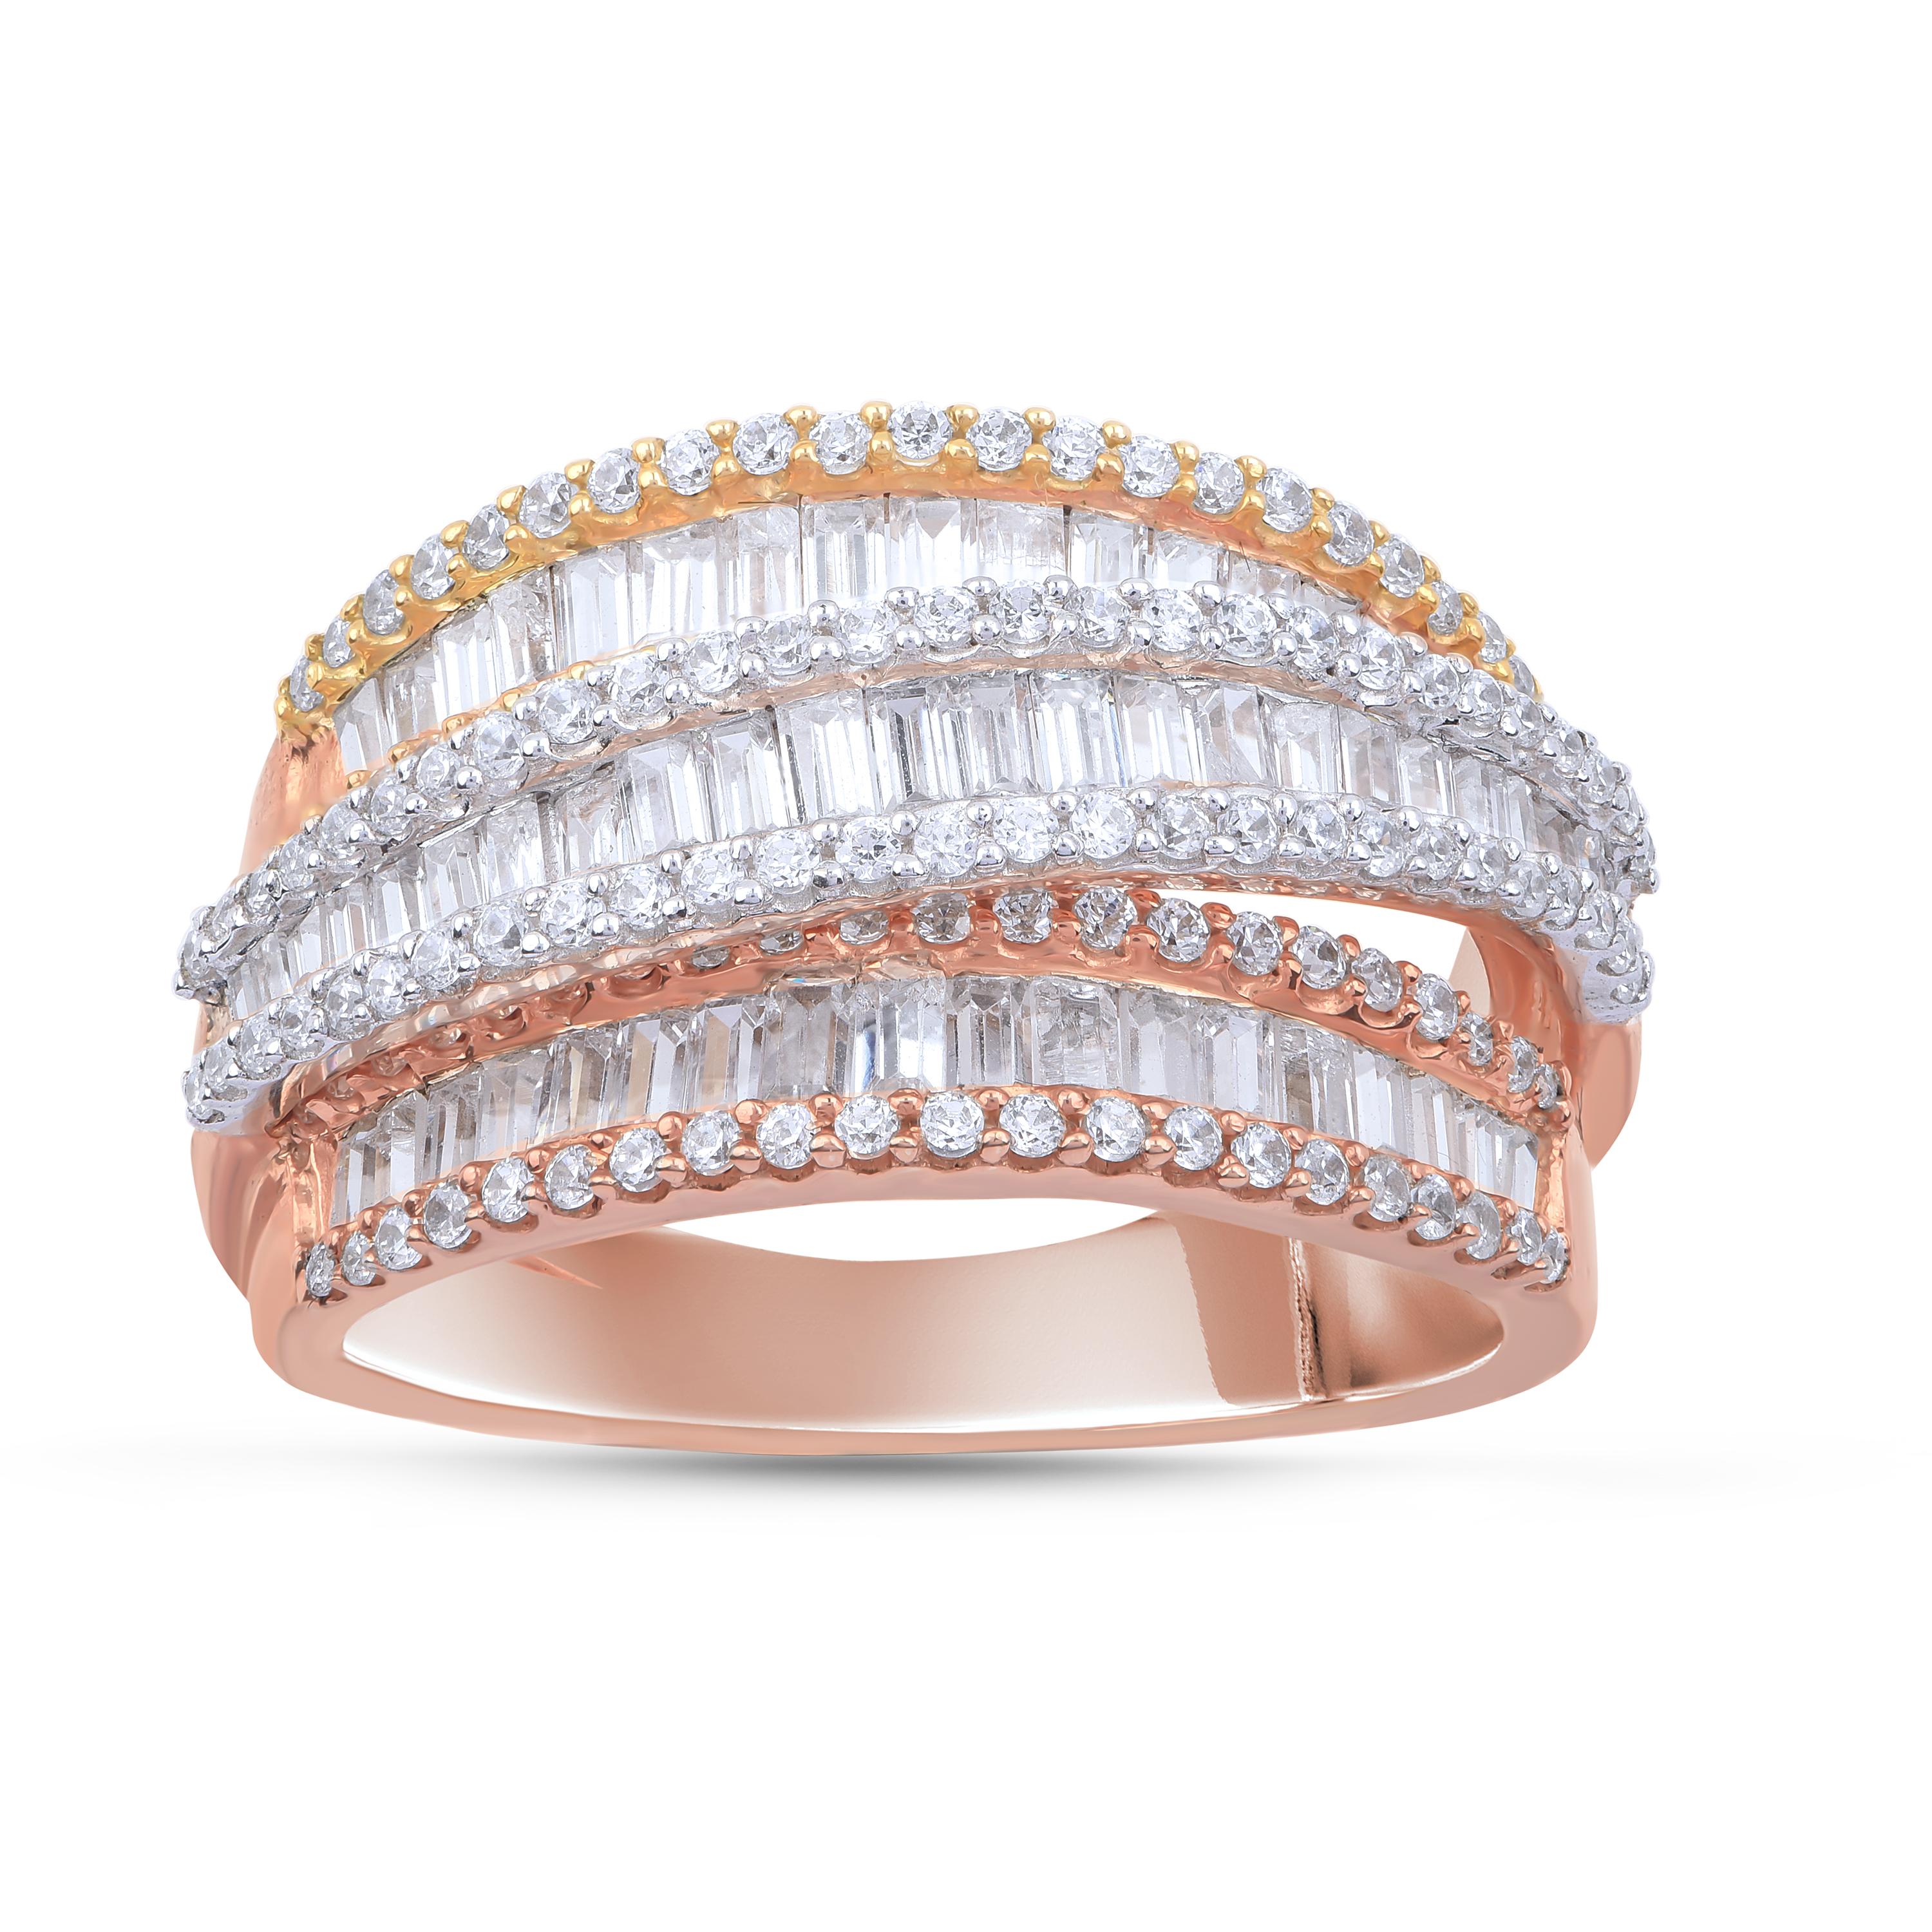 El impresionante anillo de diamantes está adornado con 138 brillantes y 59 baguettes en engaste de garra y canal, y fabricado en oro rosa de 18 quilates. Los diamantes tienen un color H-I y una pureza I2. 

El color del metal y el tamaño del anillo